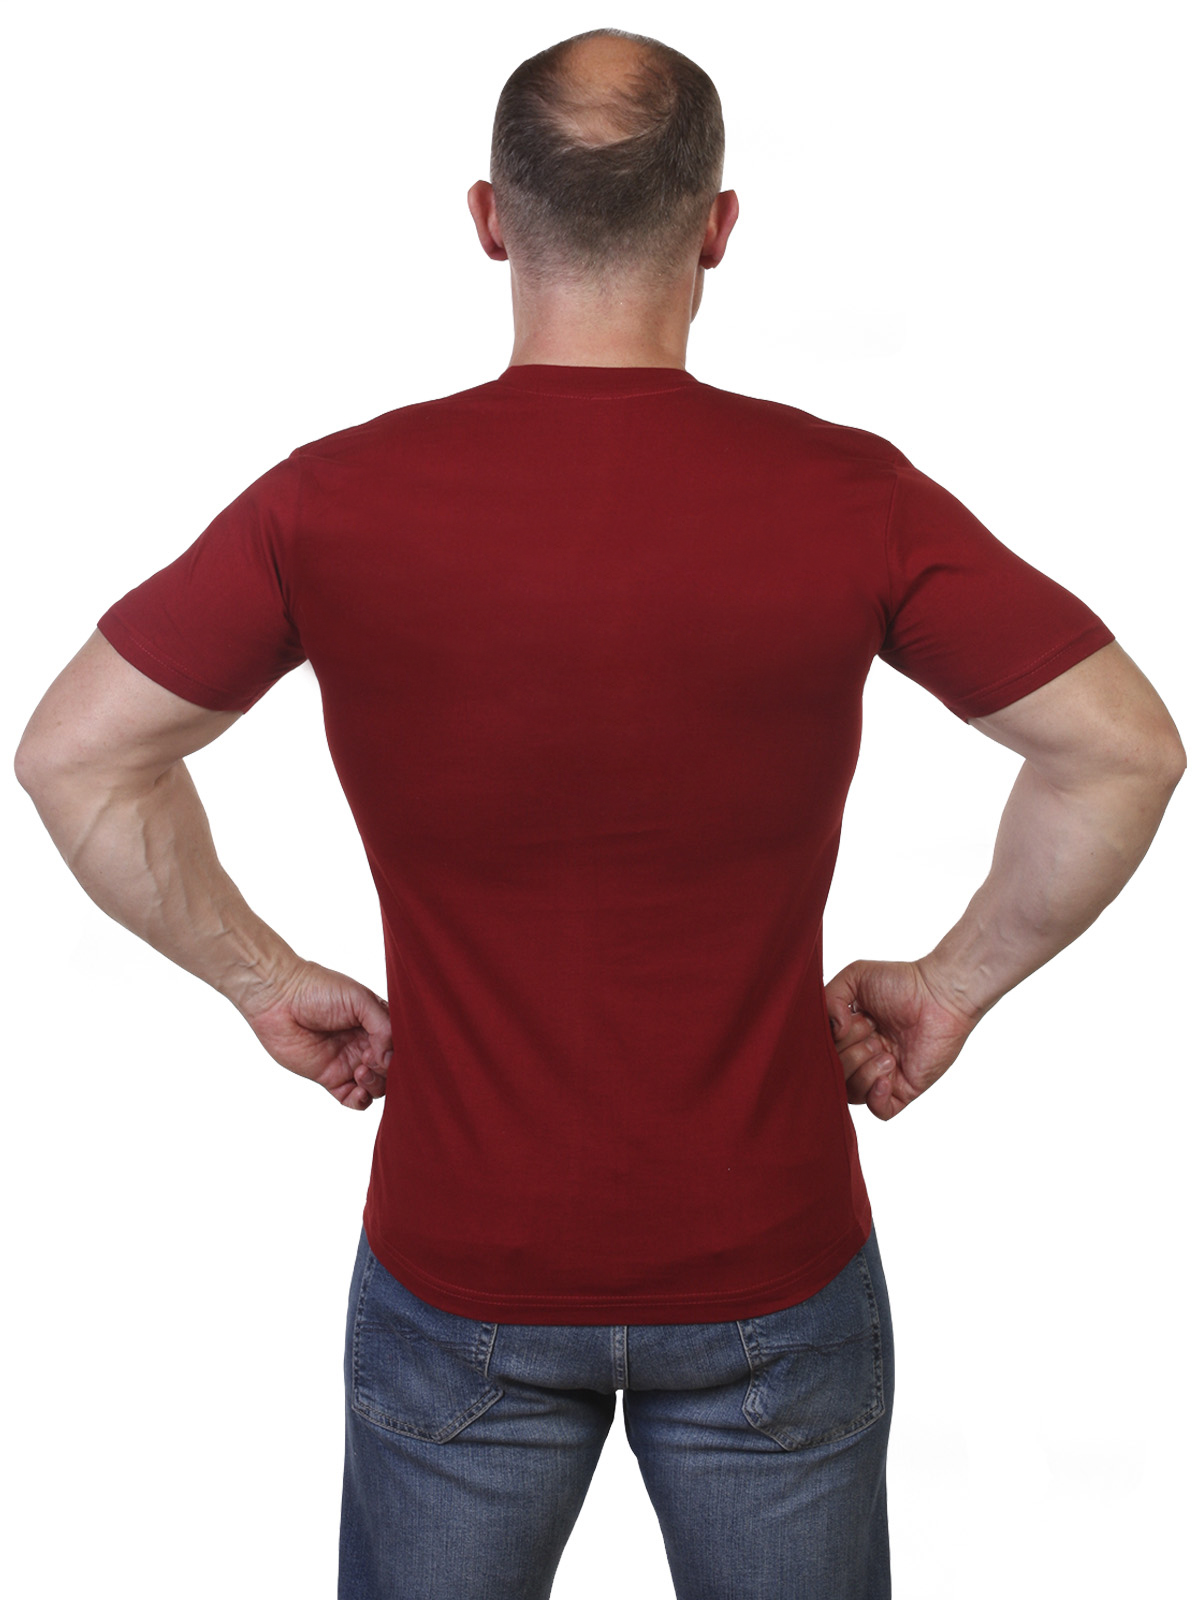 Мужские футболки на заказ – шевроны и трансферы